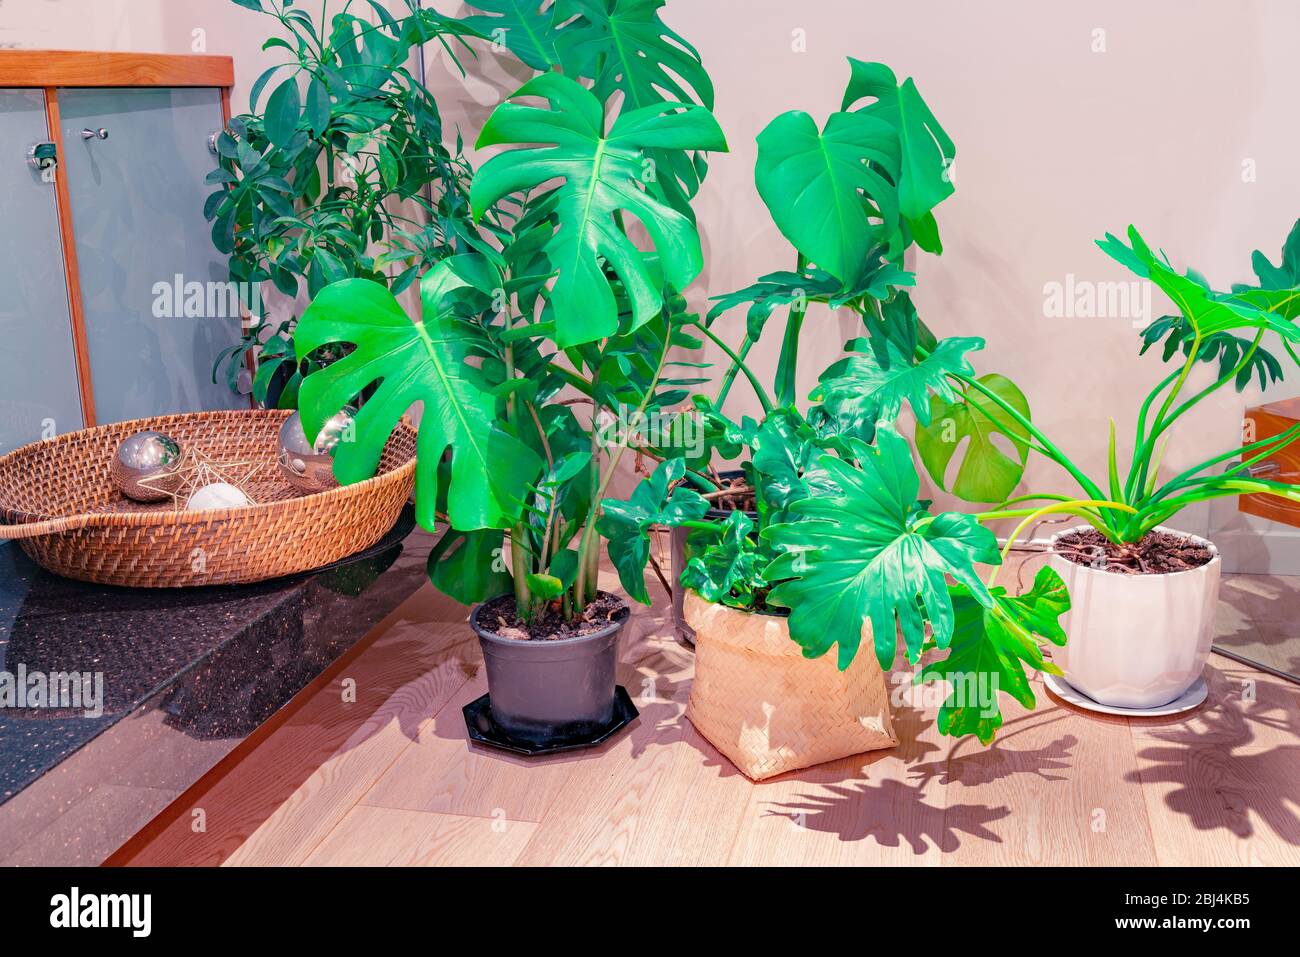 Home Interior Bild von beliebten großen blättrigen Topfpflanzen innen mit Schatten Muster von Blättern auf Holzboden. Stockfoto